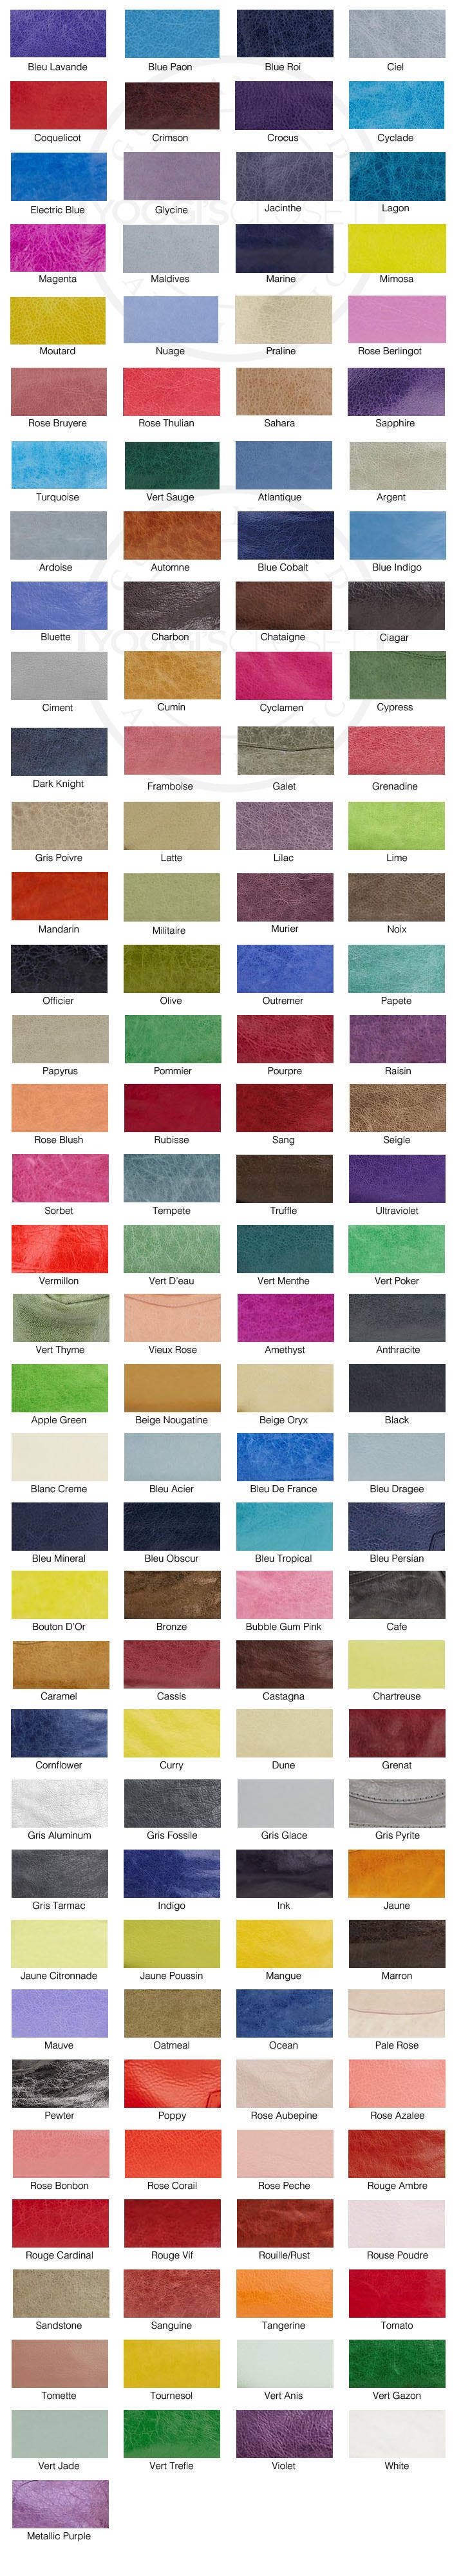 Balenciaga Color Guide